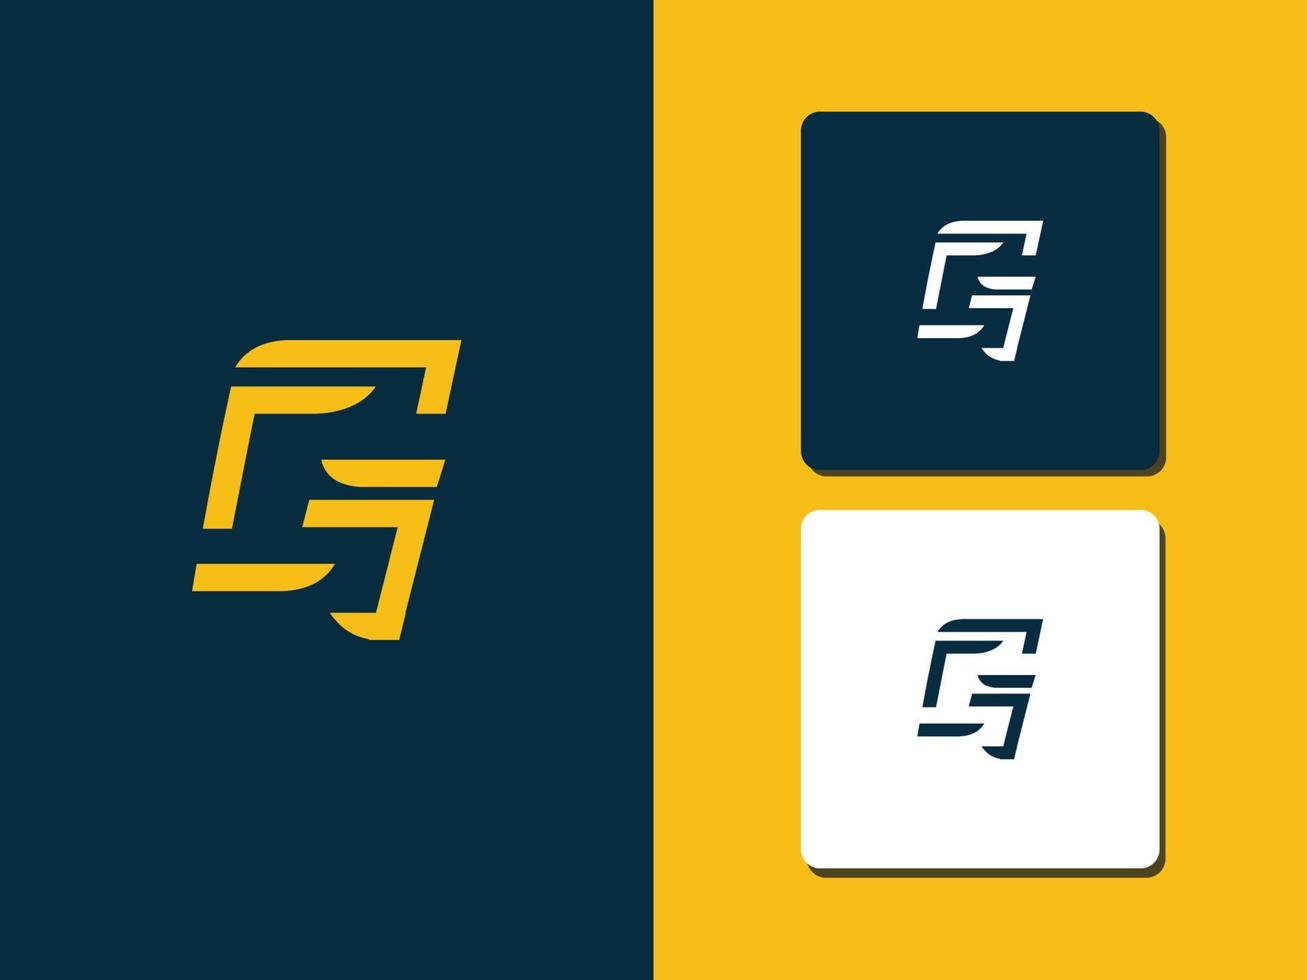 lettre g logo concept vecteur pro